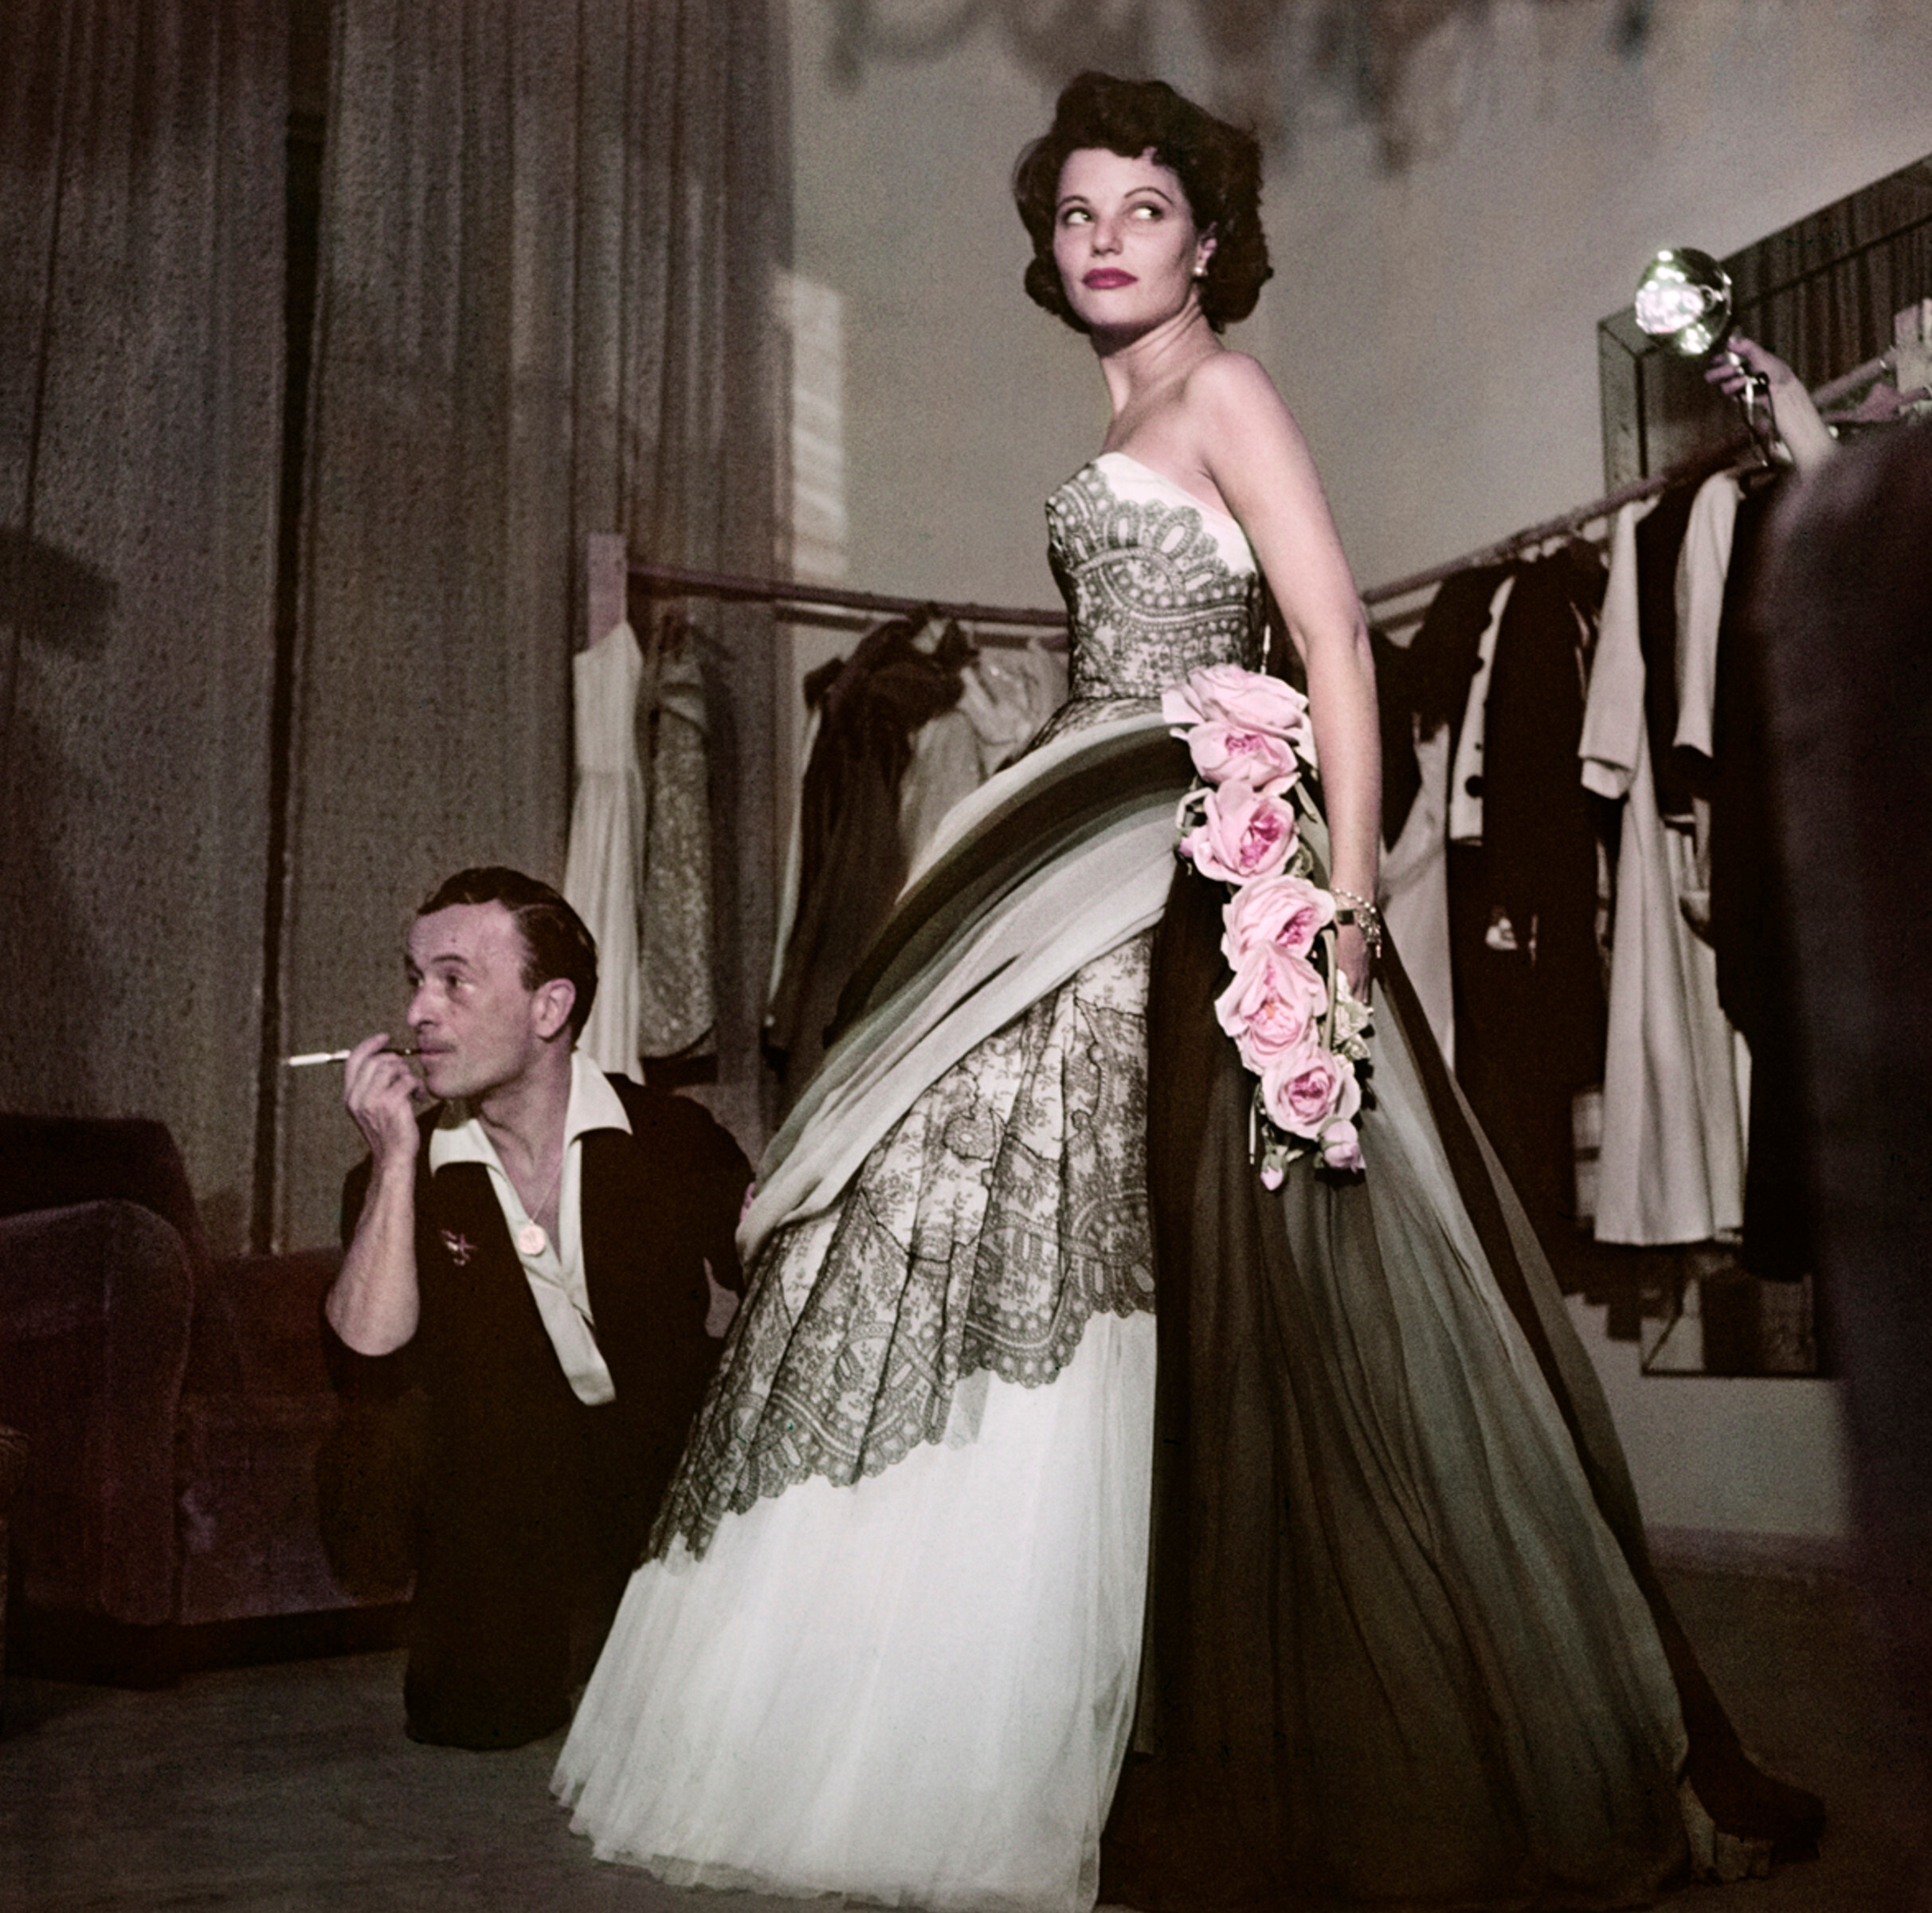 Актриса Джеральдин Брукс примеряет платье в доме моды Эмилио Шуберта, Рим, август 1951 год. Фотограф Роберт Капа